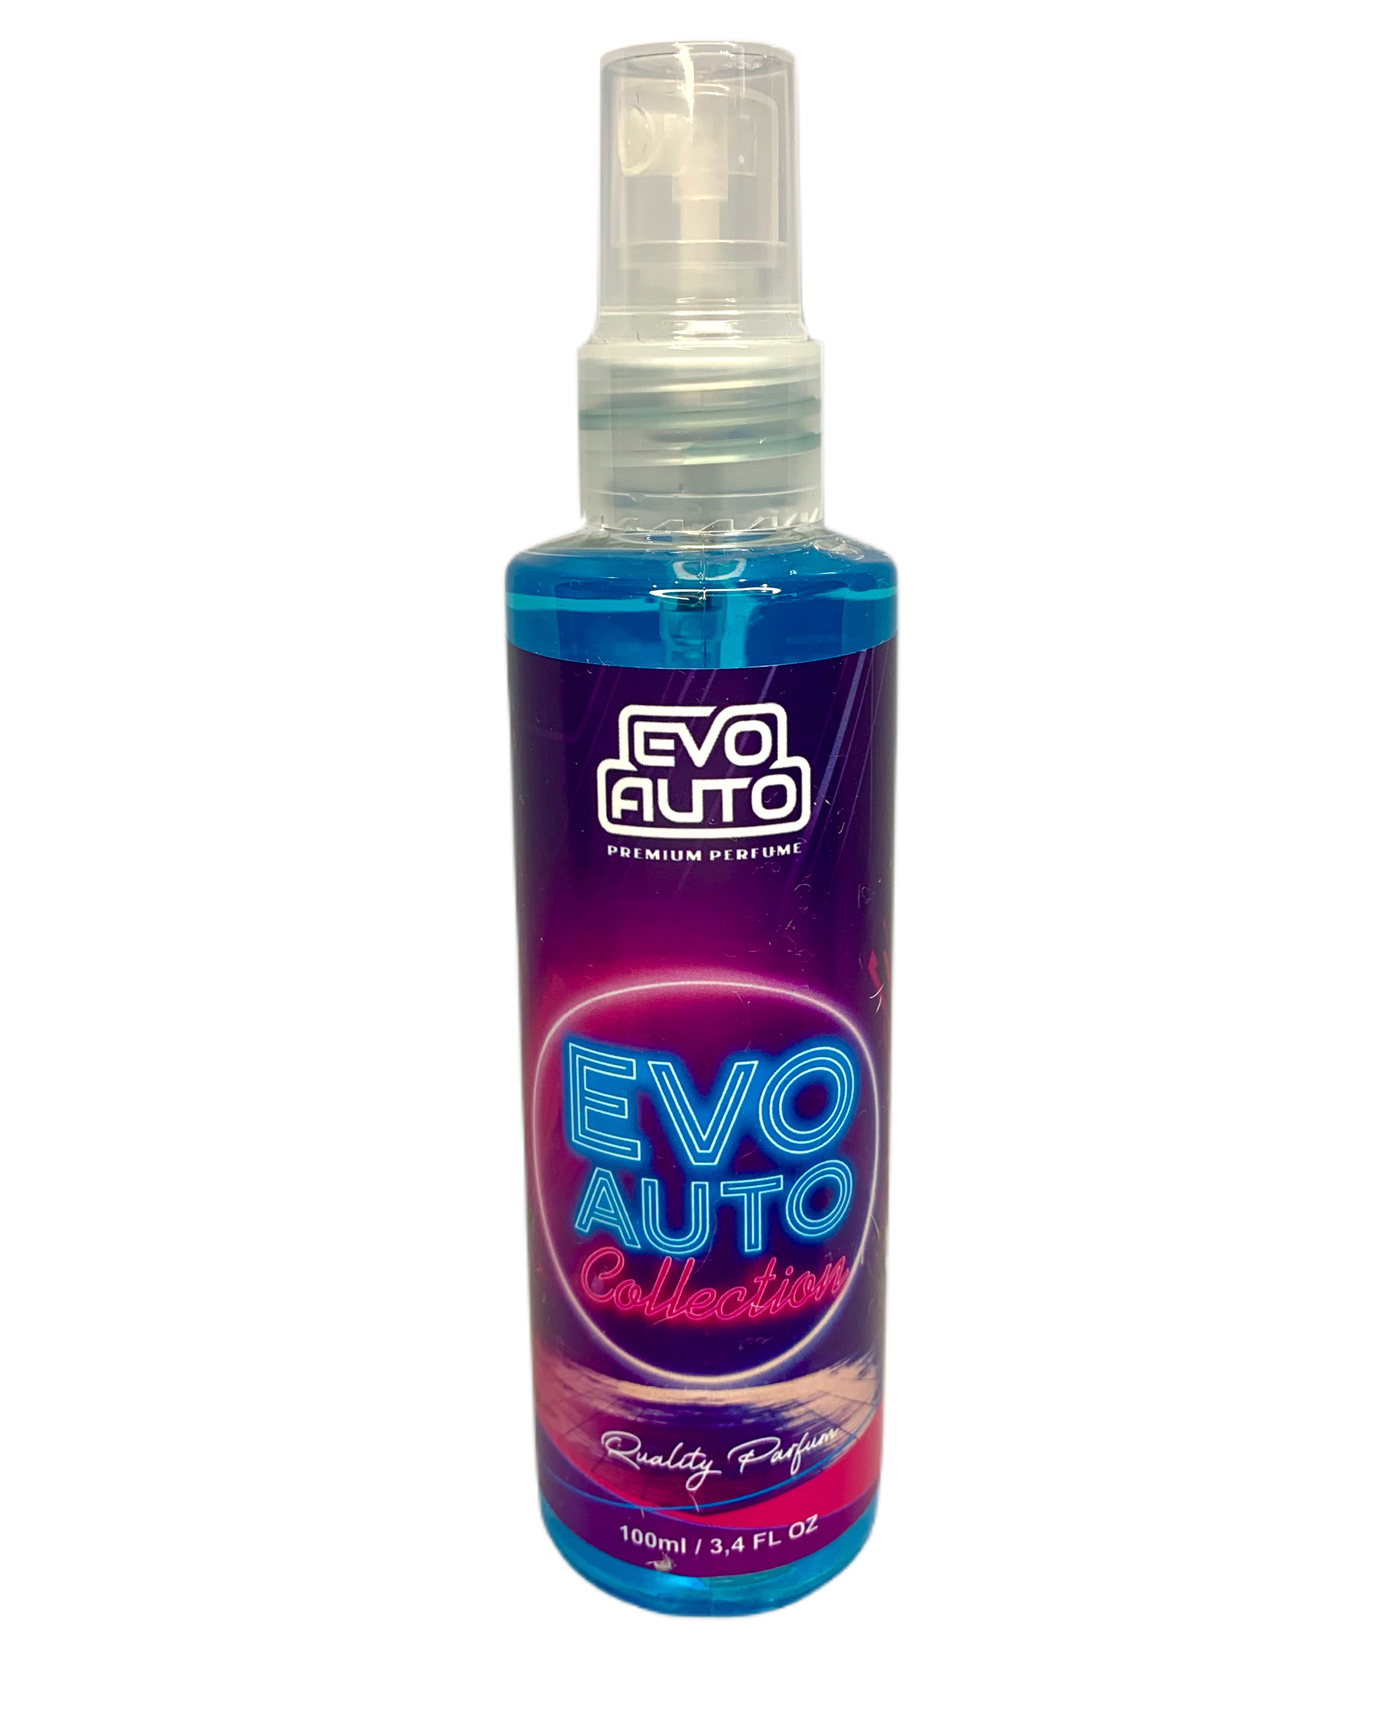 Aromatizante Evo Collection Spray 100ml Evo Auto